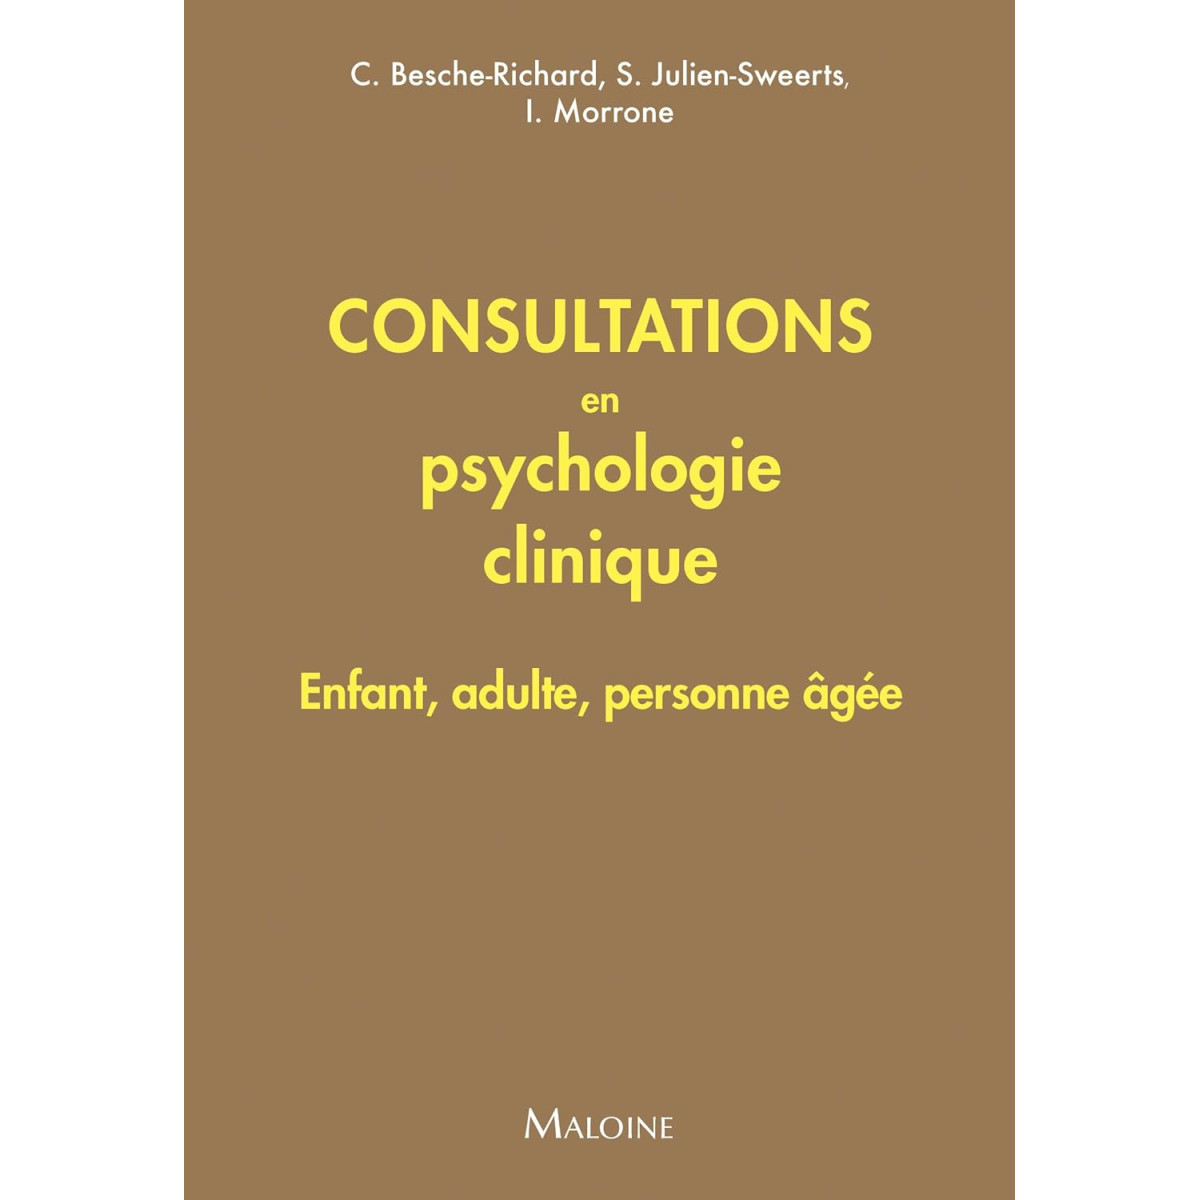 Consultations en psychologie clinique: Enfant, adulte, personne âgée